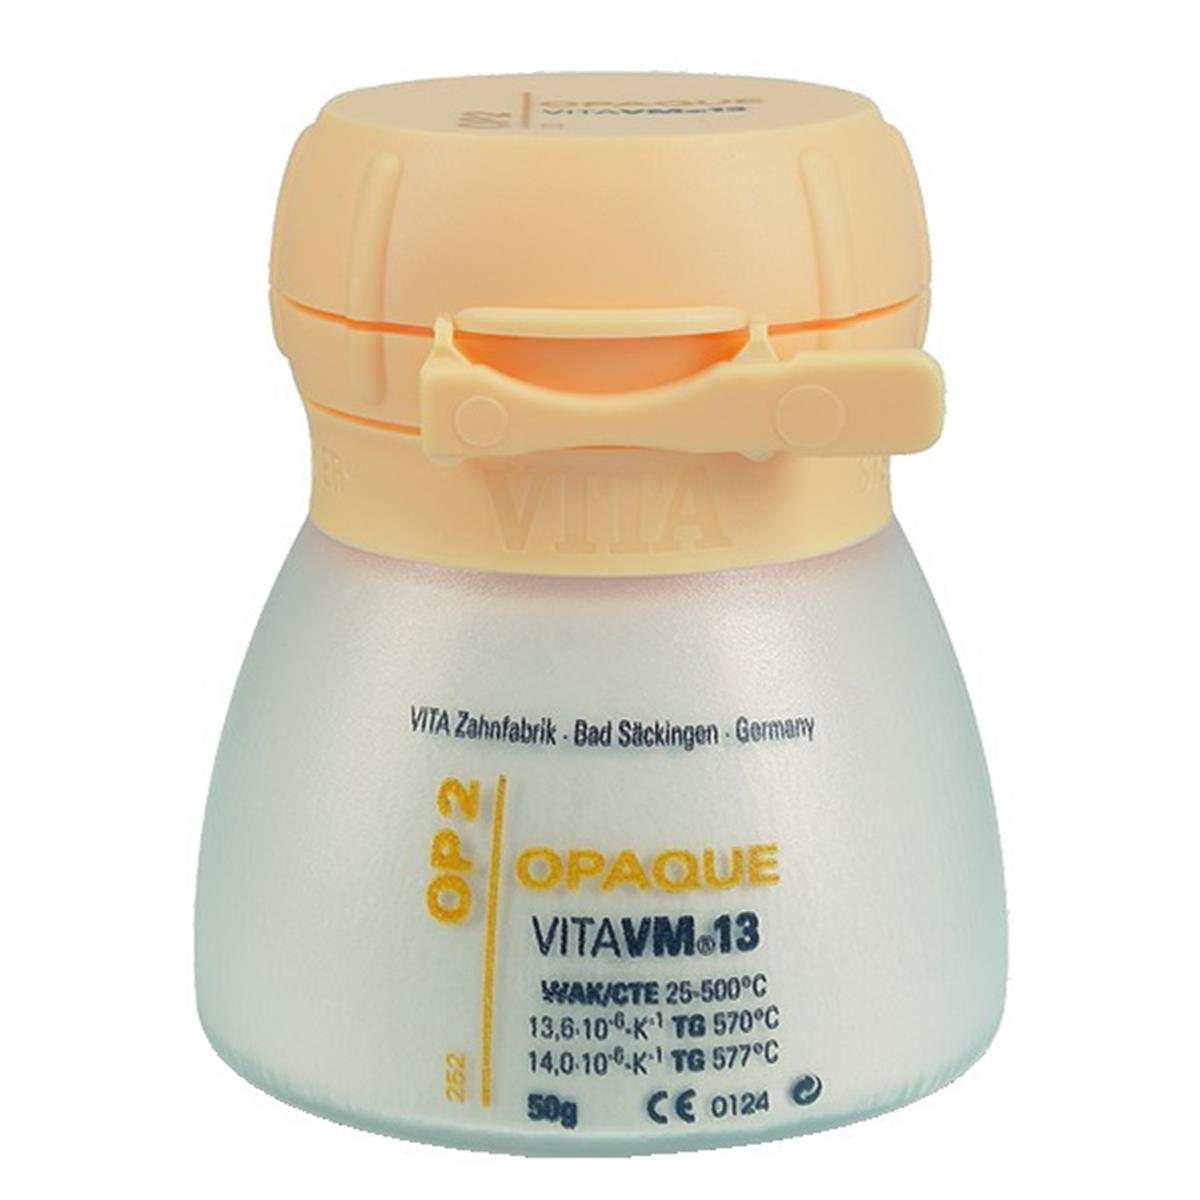 VM13 VITA - Opaque - OP0 - Le pot de 12 g